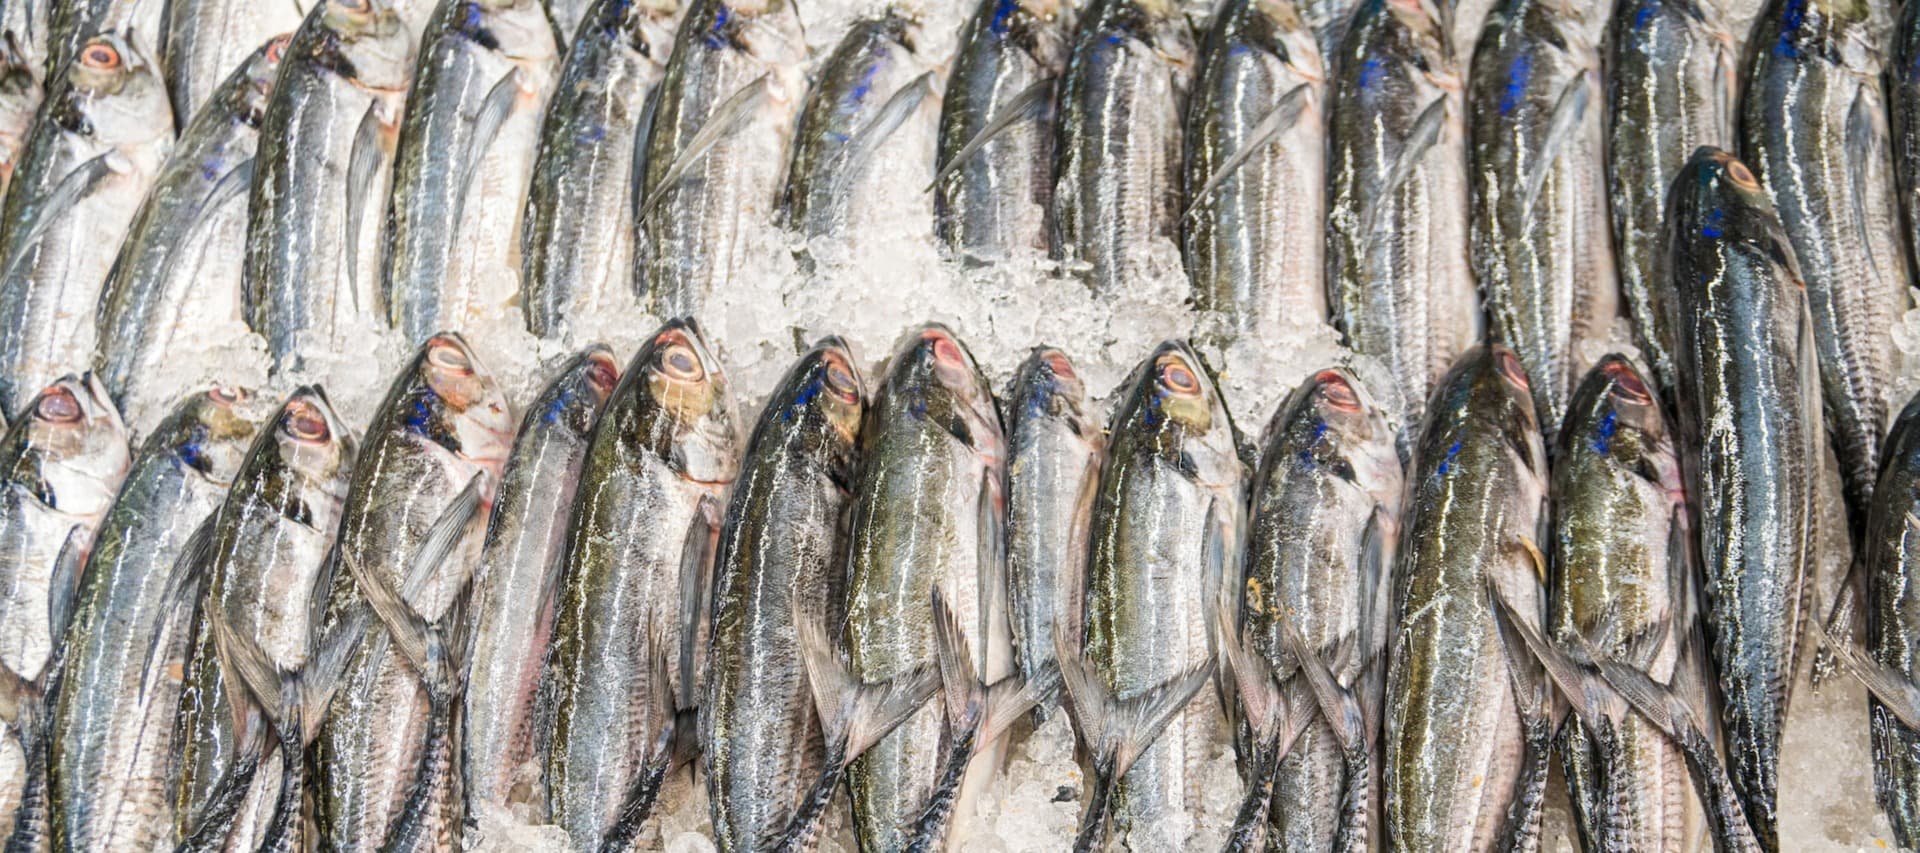 Фото новости: "Рыбный союз предложил повысить норматив глазури для рыбы и морепродуктов"